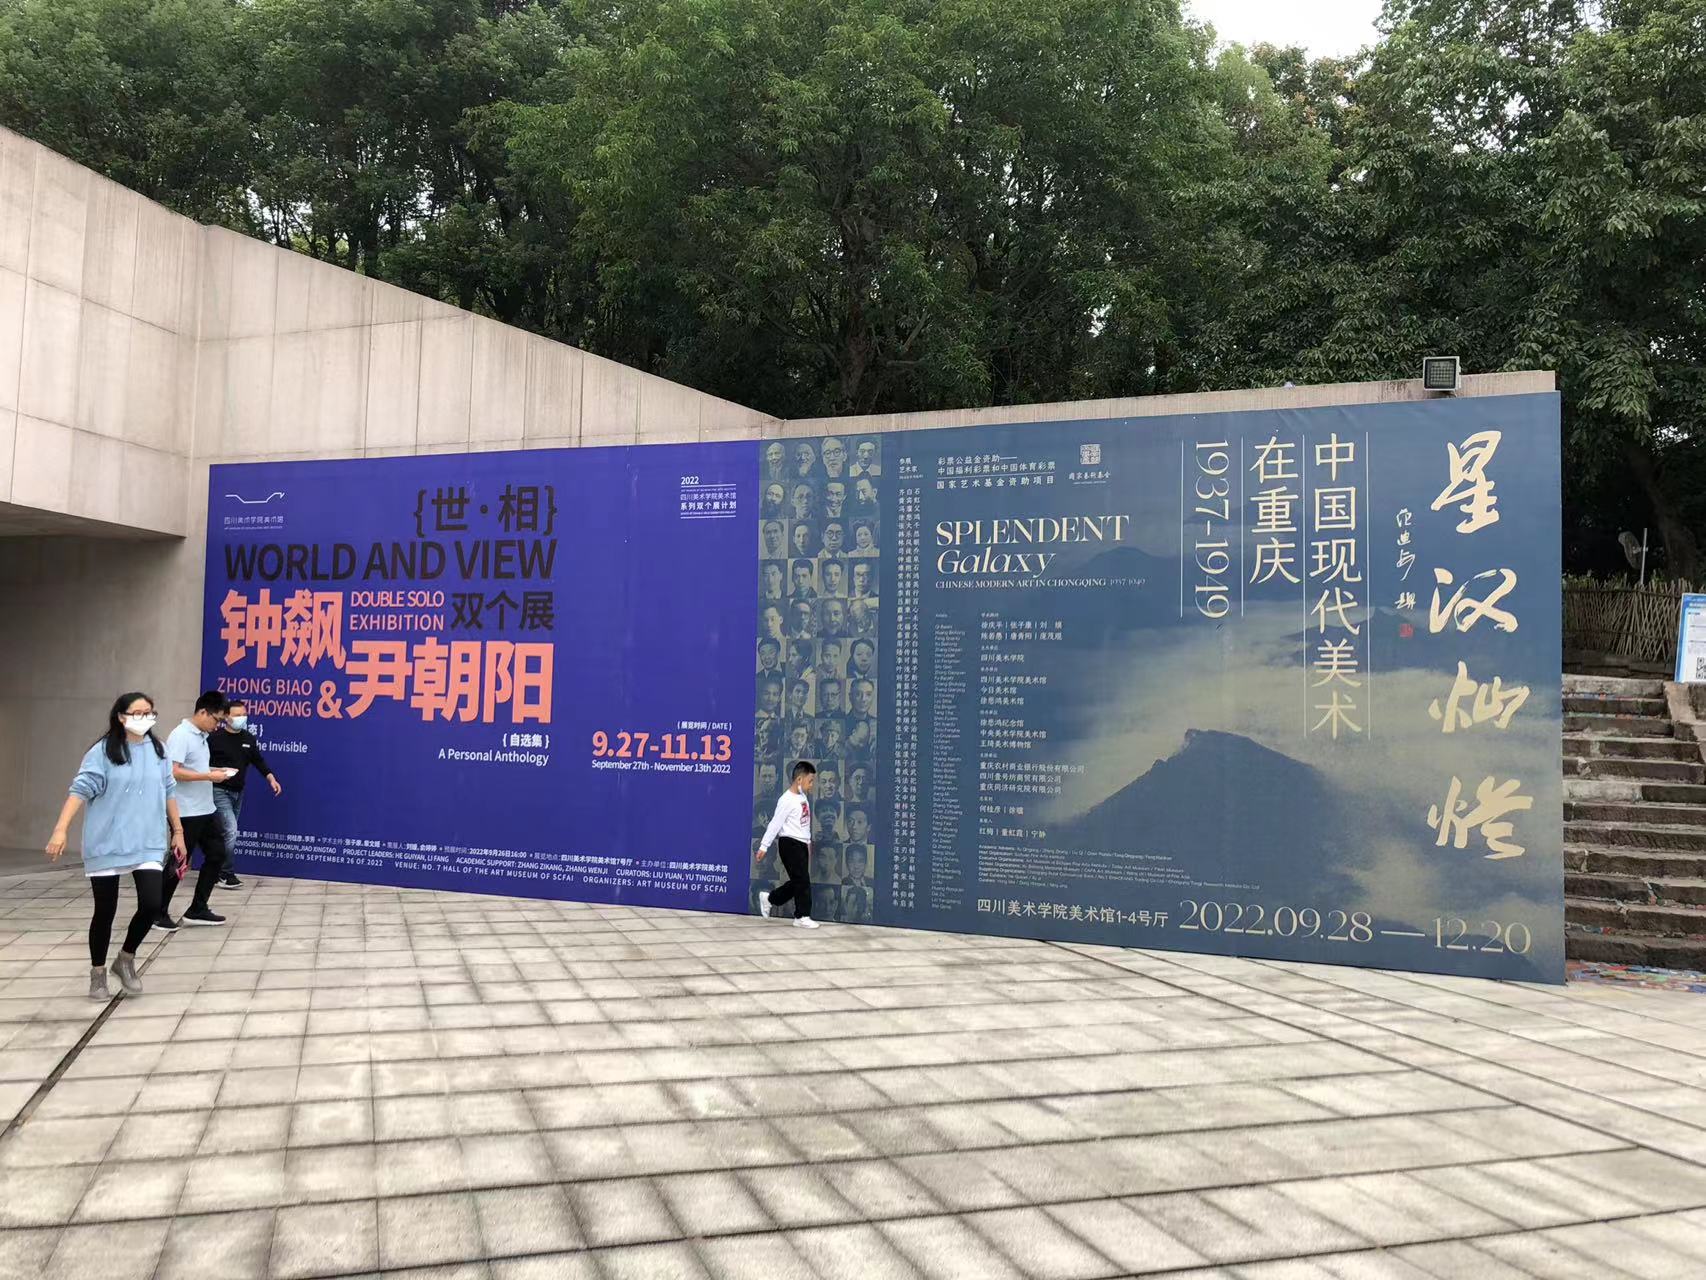  < 미술관 앞에 설치된 대형 현수막 포스터 - 출처: 통신원 촬영 >